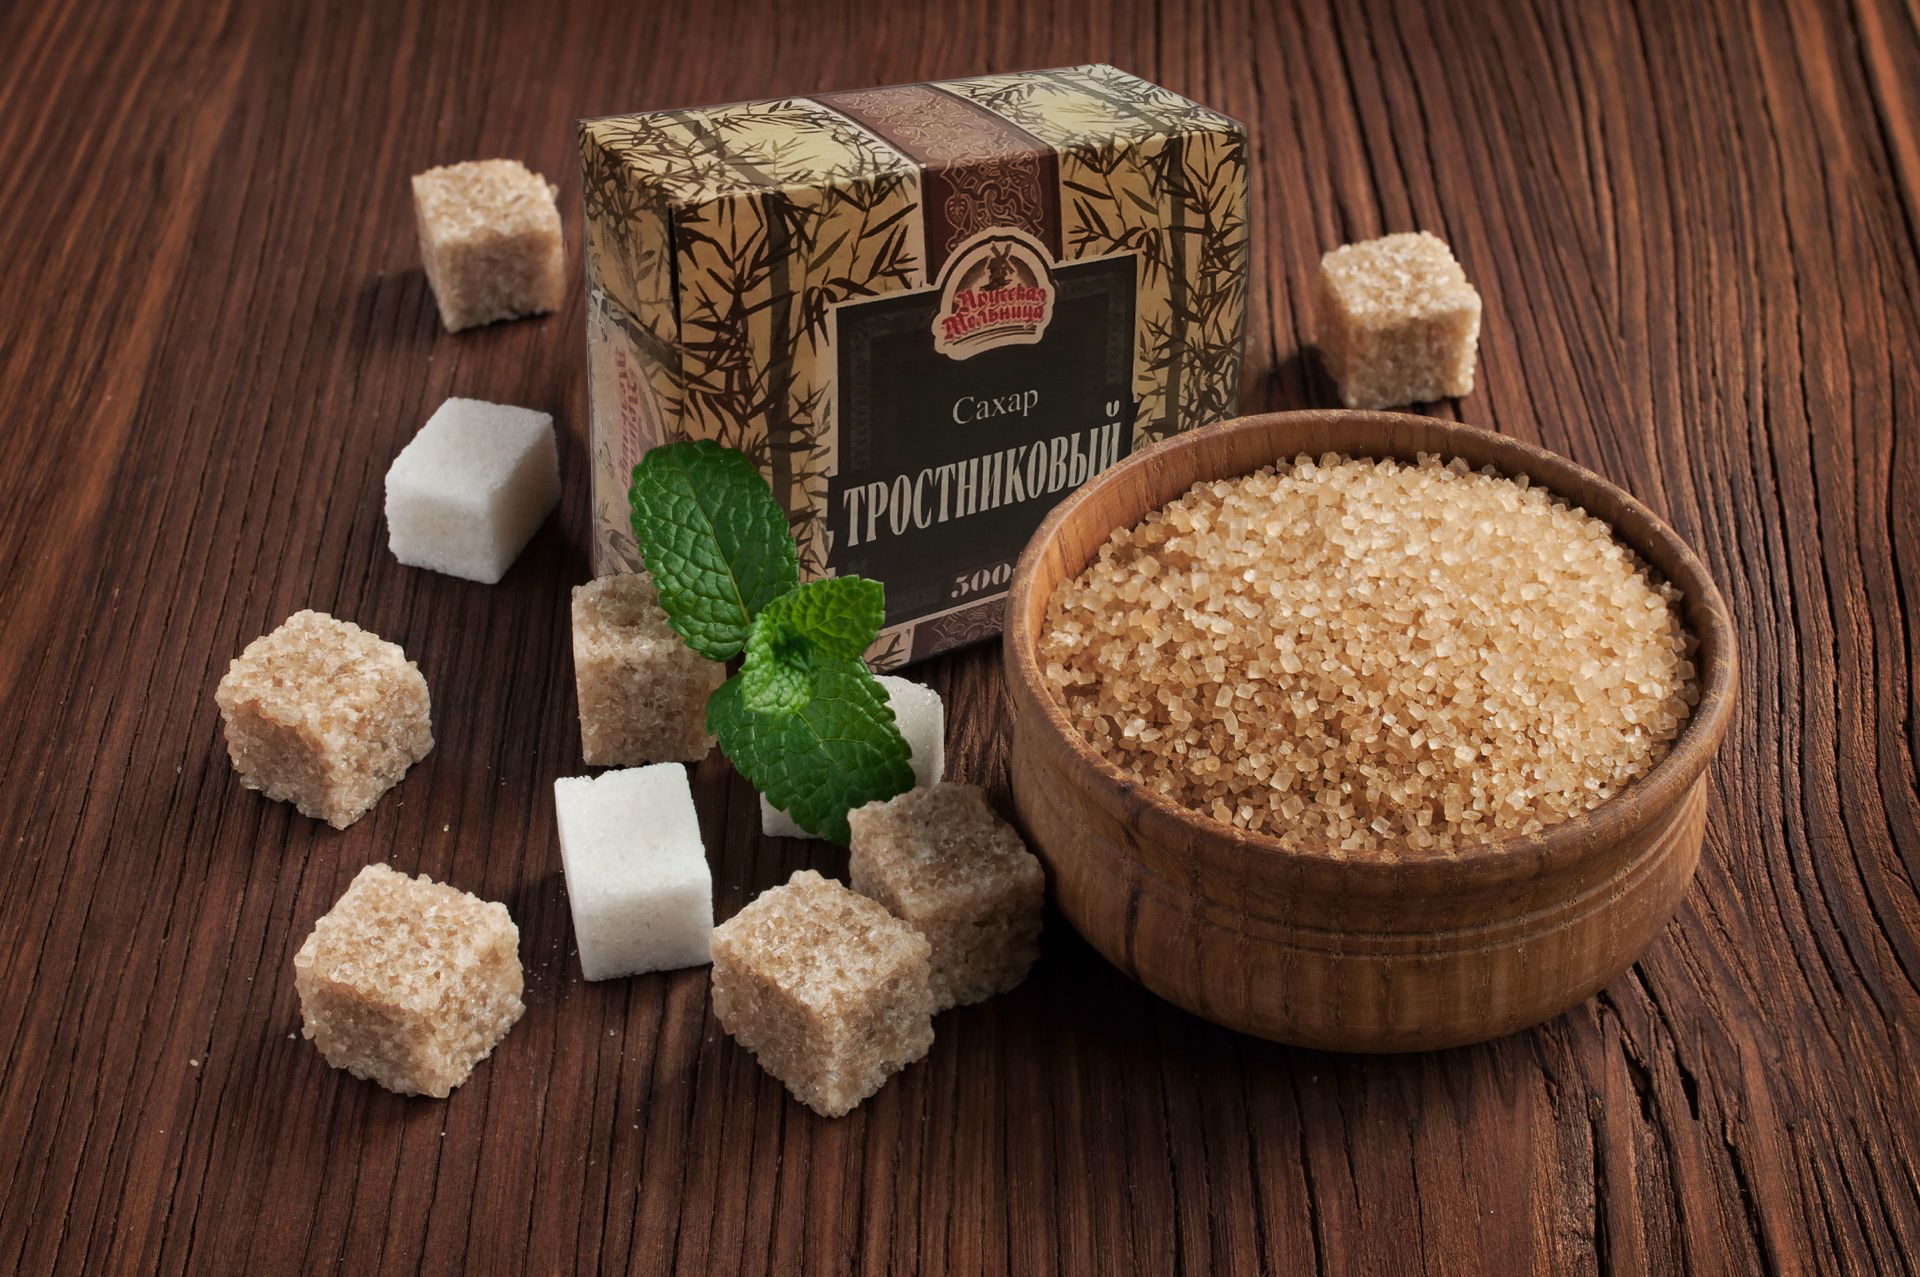 Сахар нават (набат) — польза и вред необычной узбекской сладости